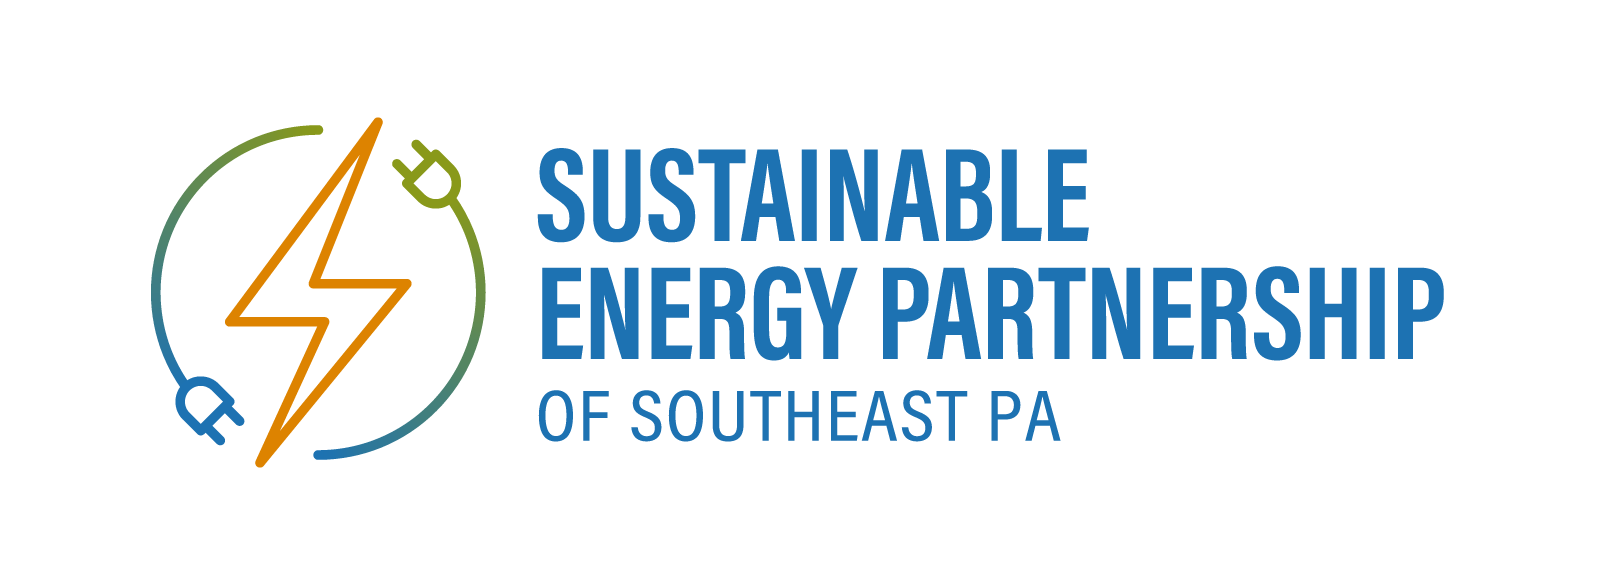 Sustainable Energy Partnership of Southeast PA logo